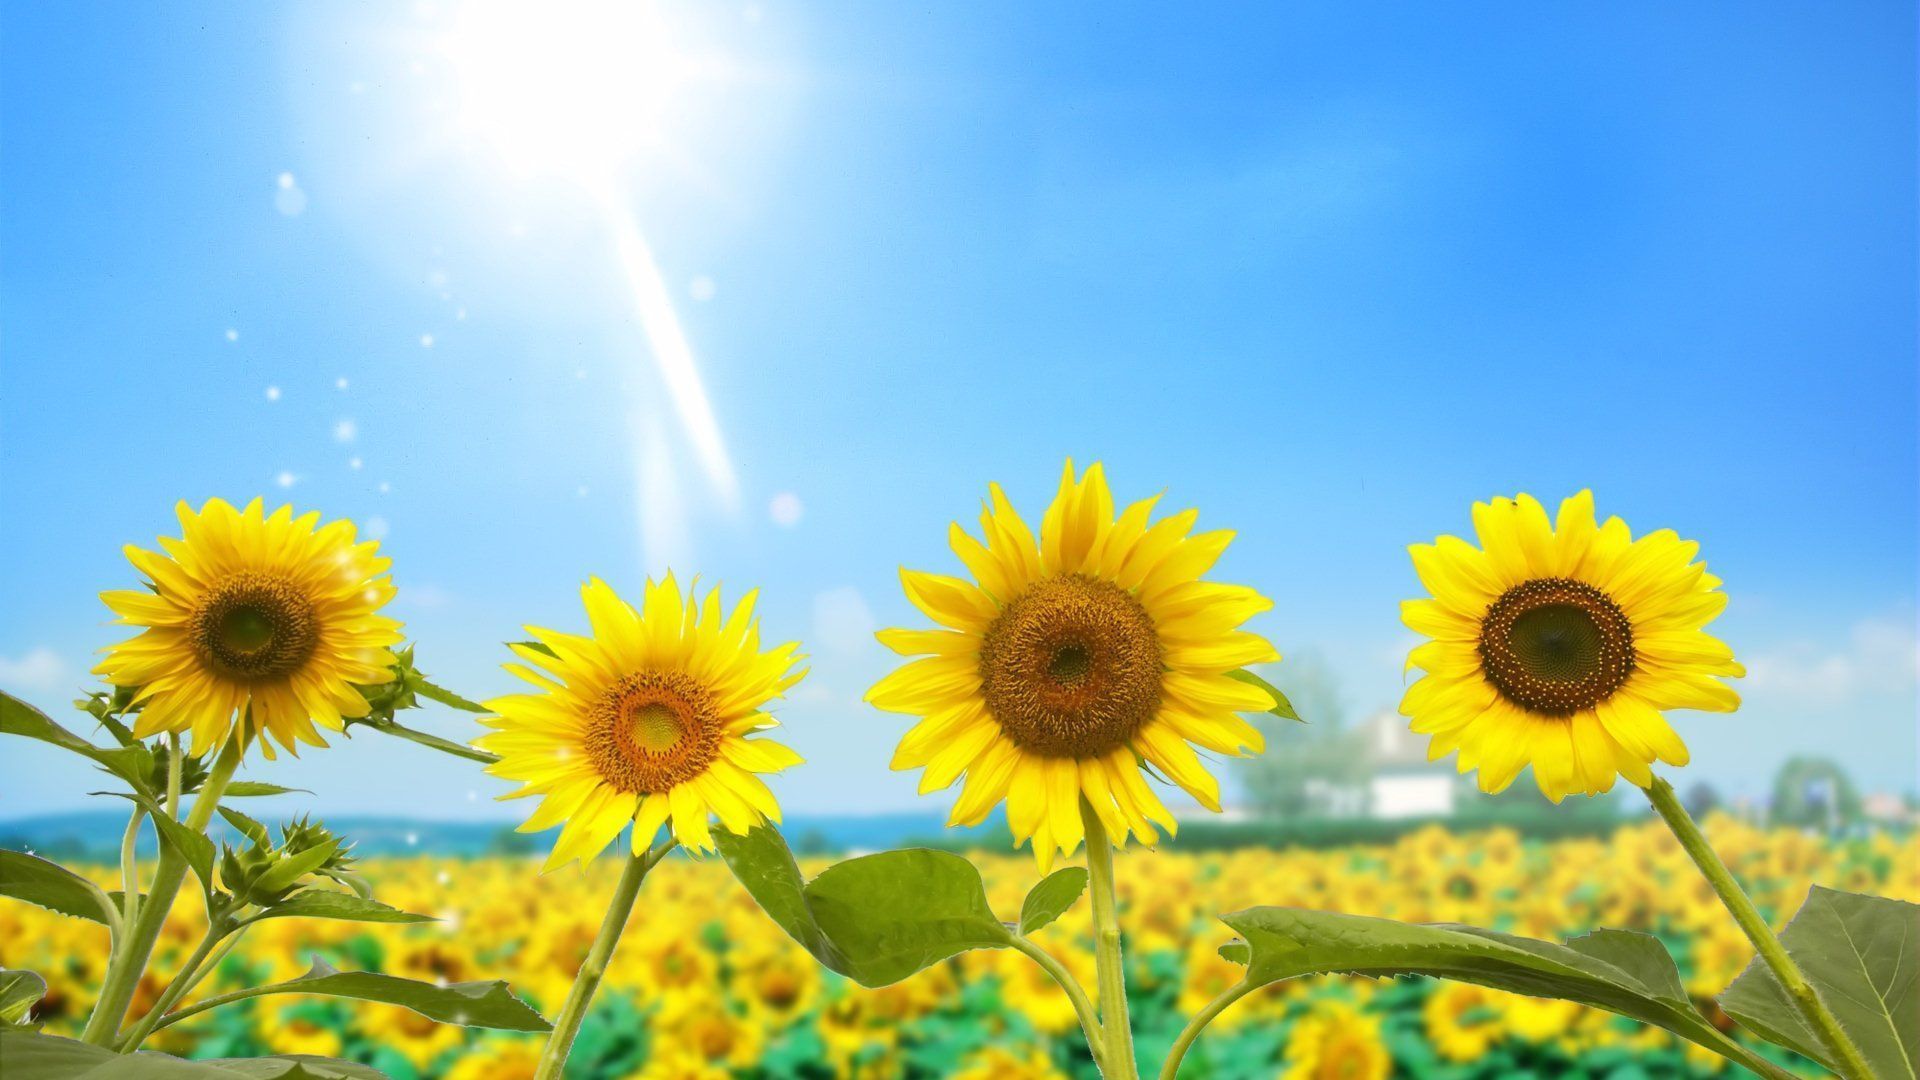 White Sunflower Wallpaper Desktop images